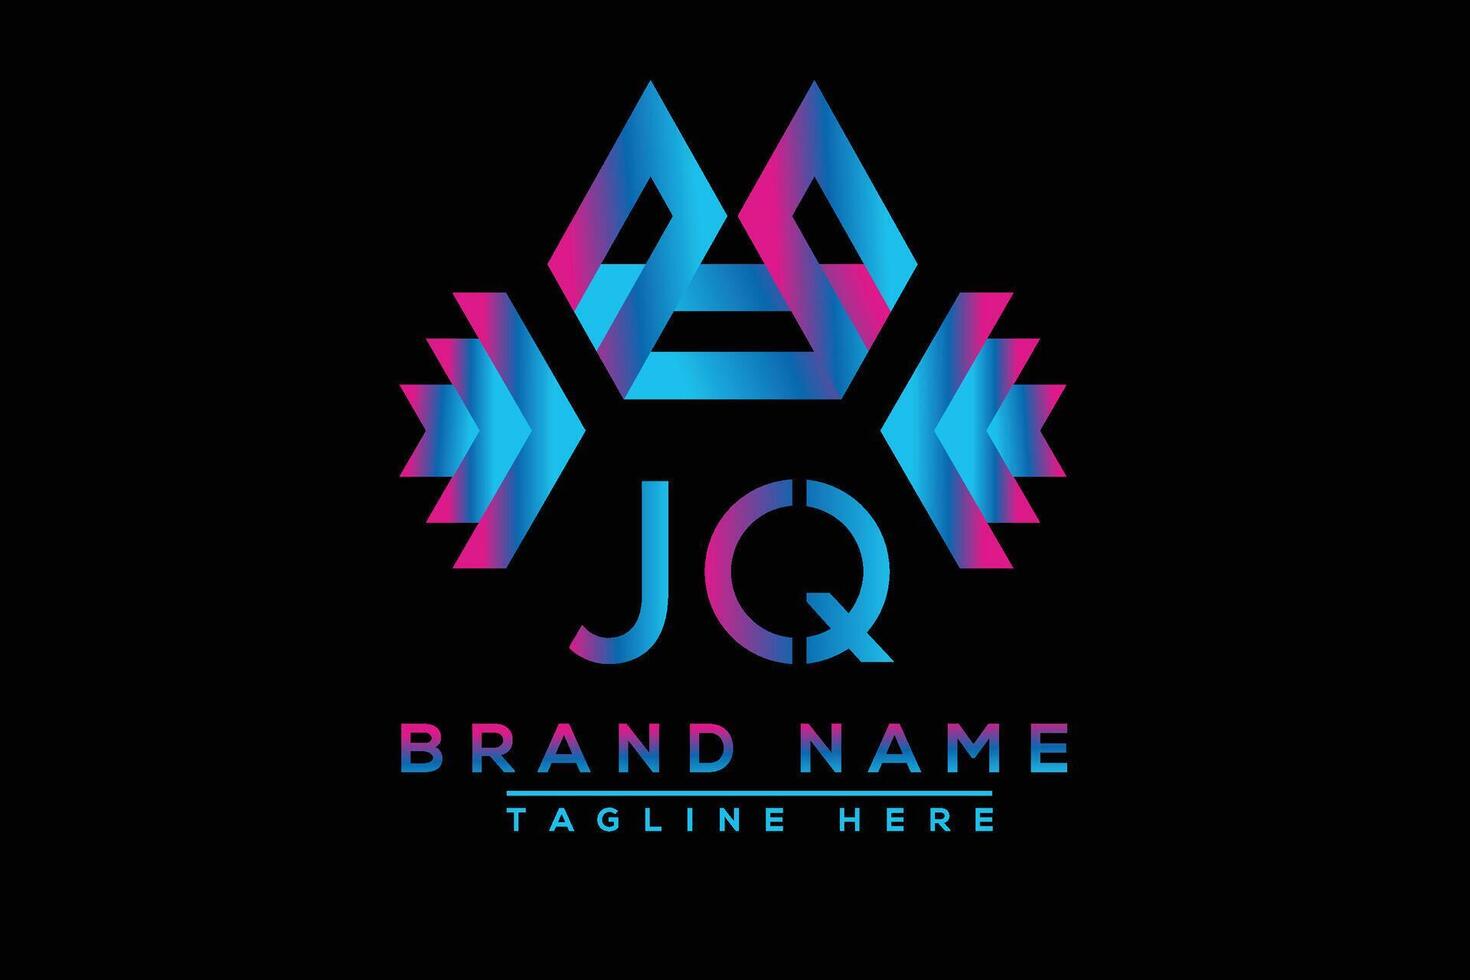 jq brev logotyp design. vektor logotyp design för företag.